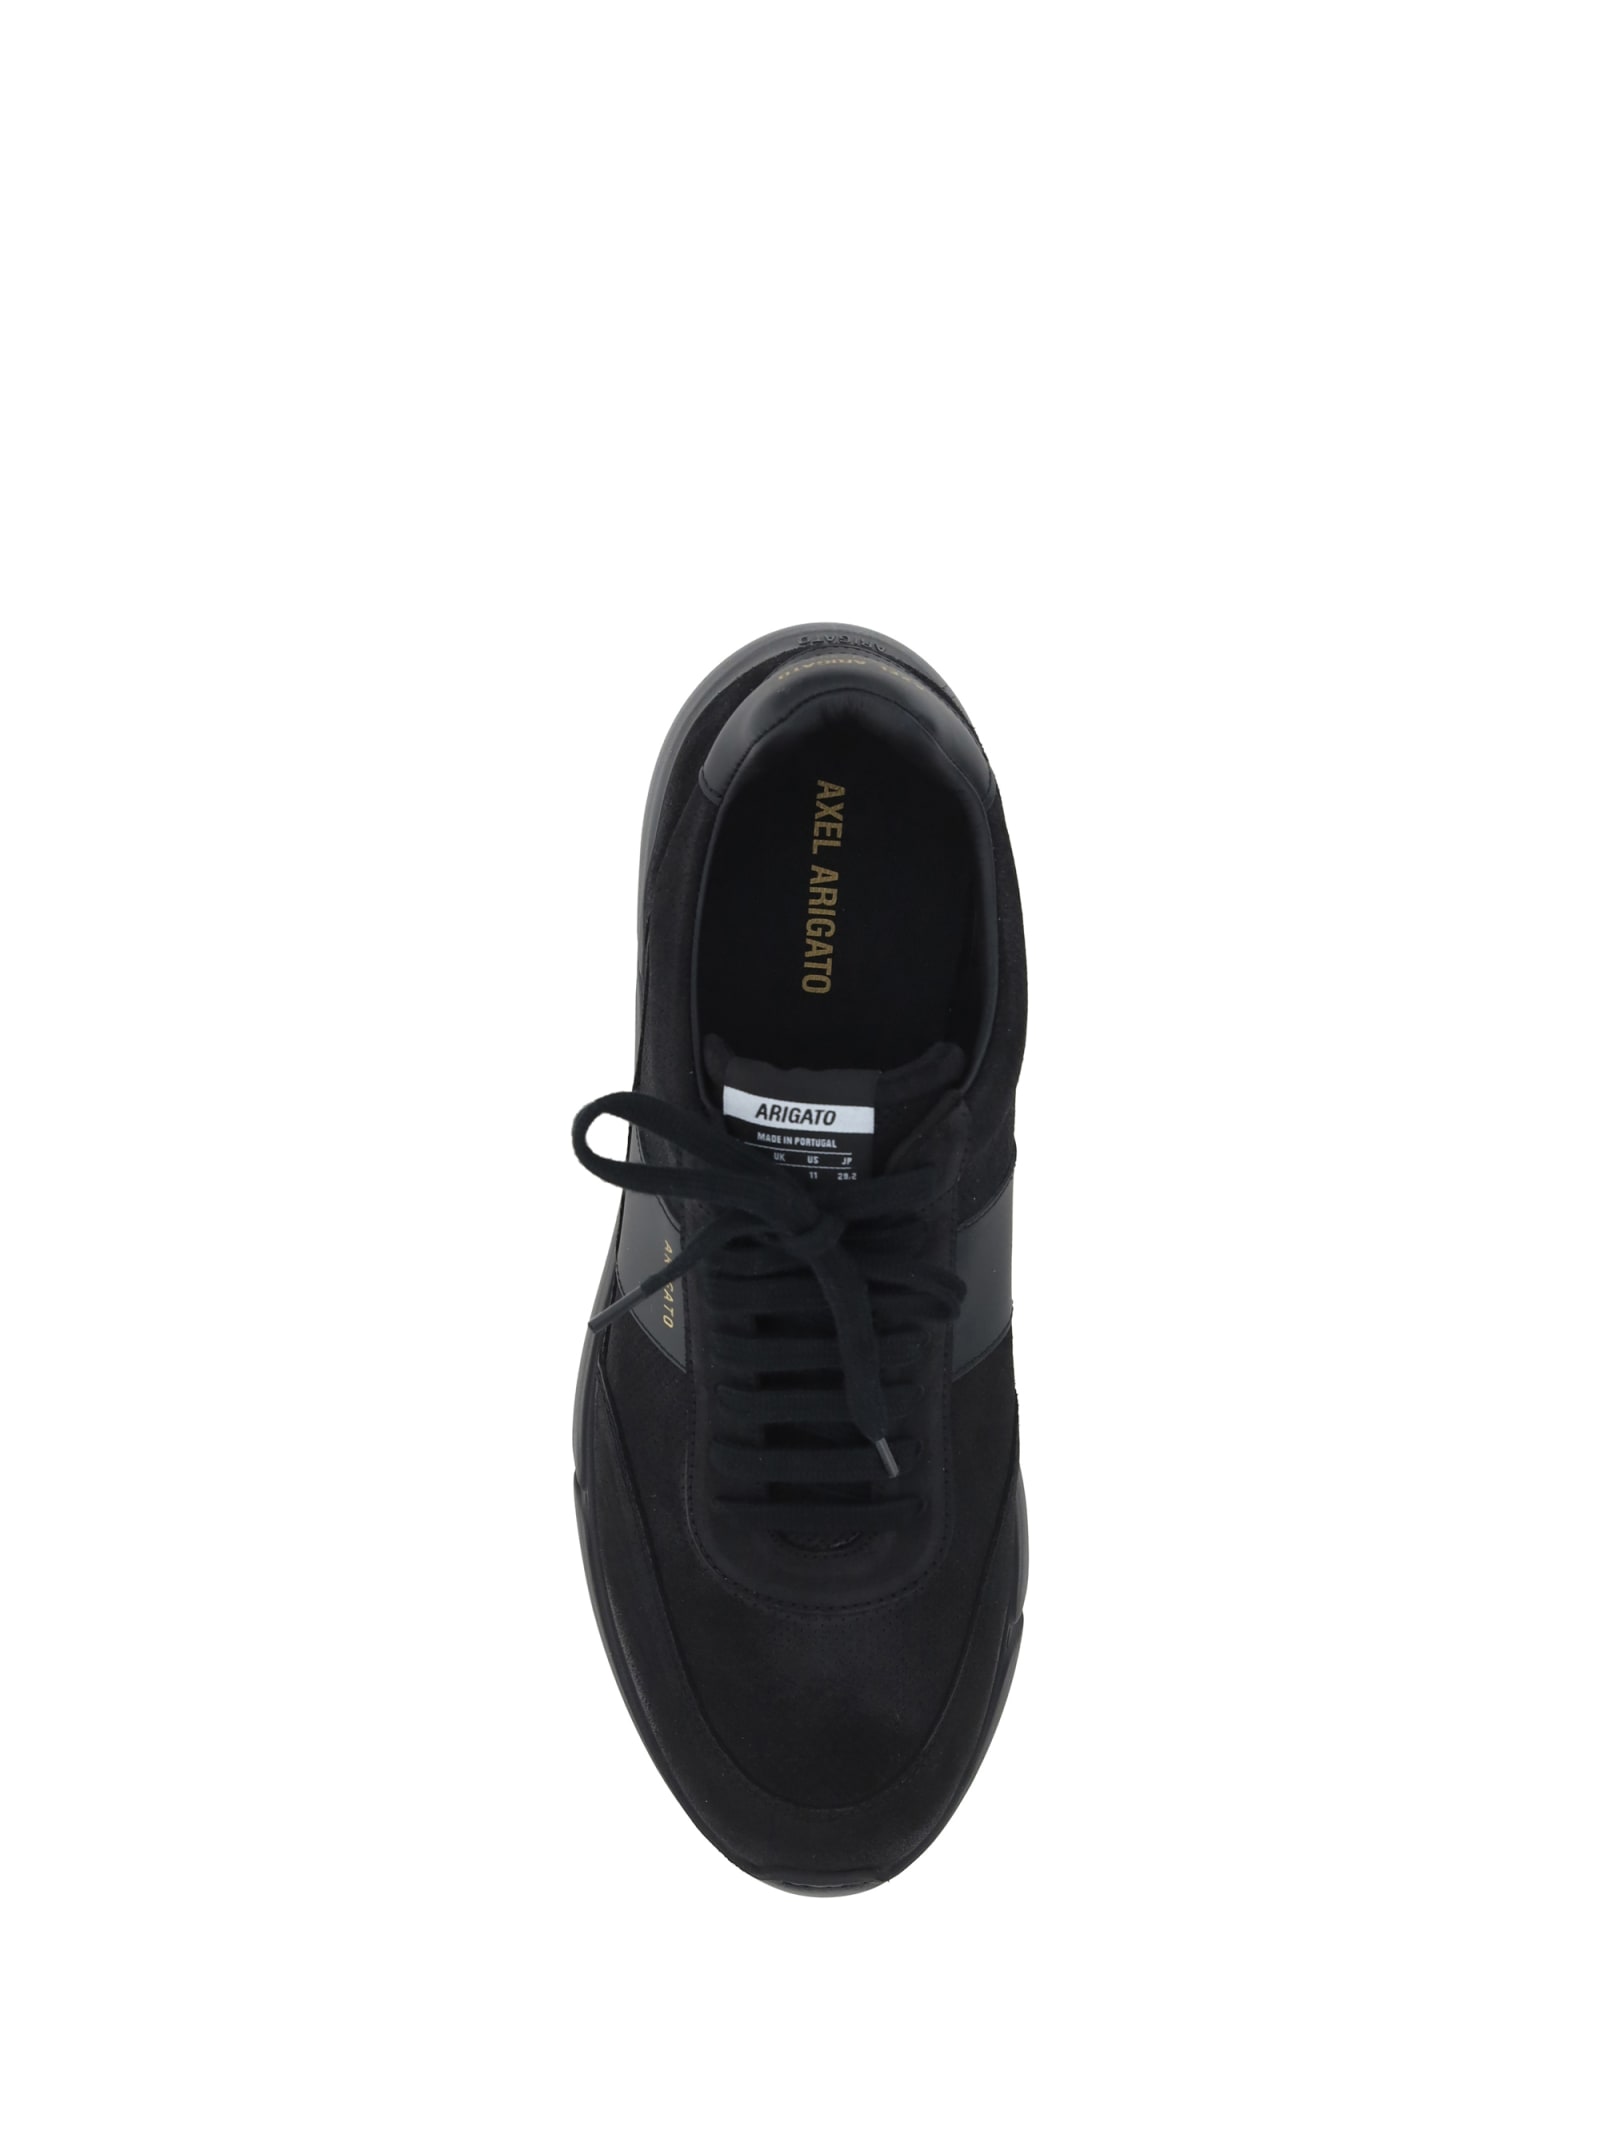 Shop Axel Arigato Genesis Vintage Sneakers In Black/black